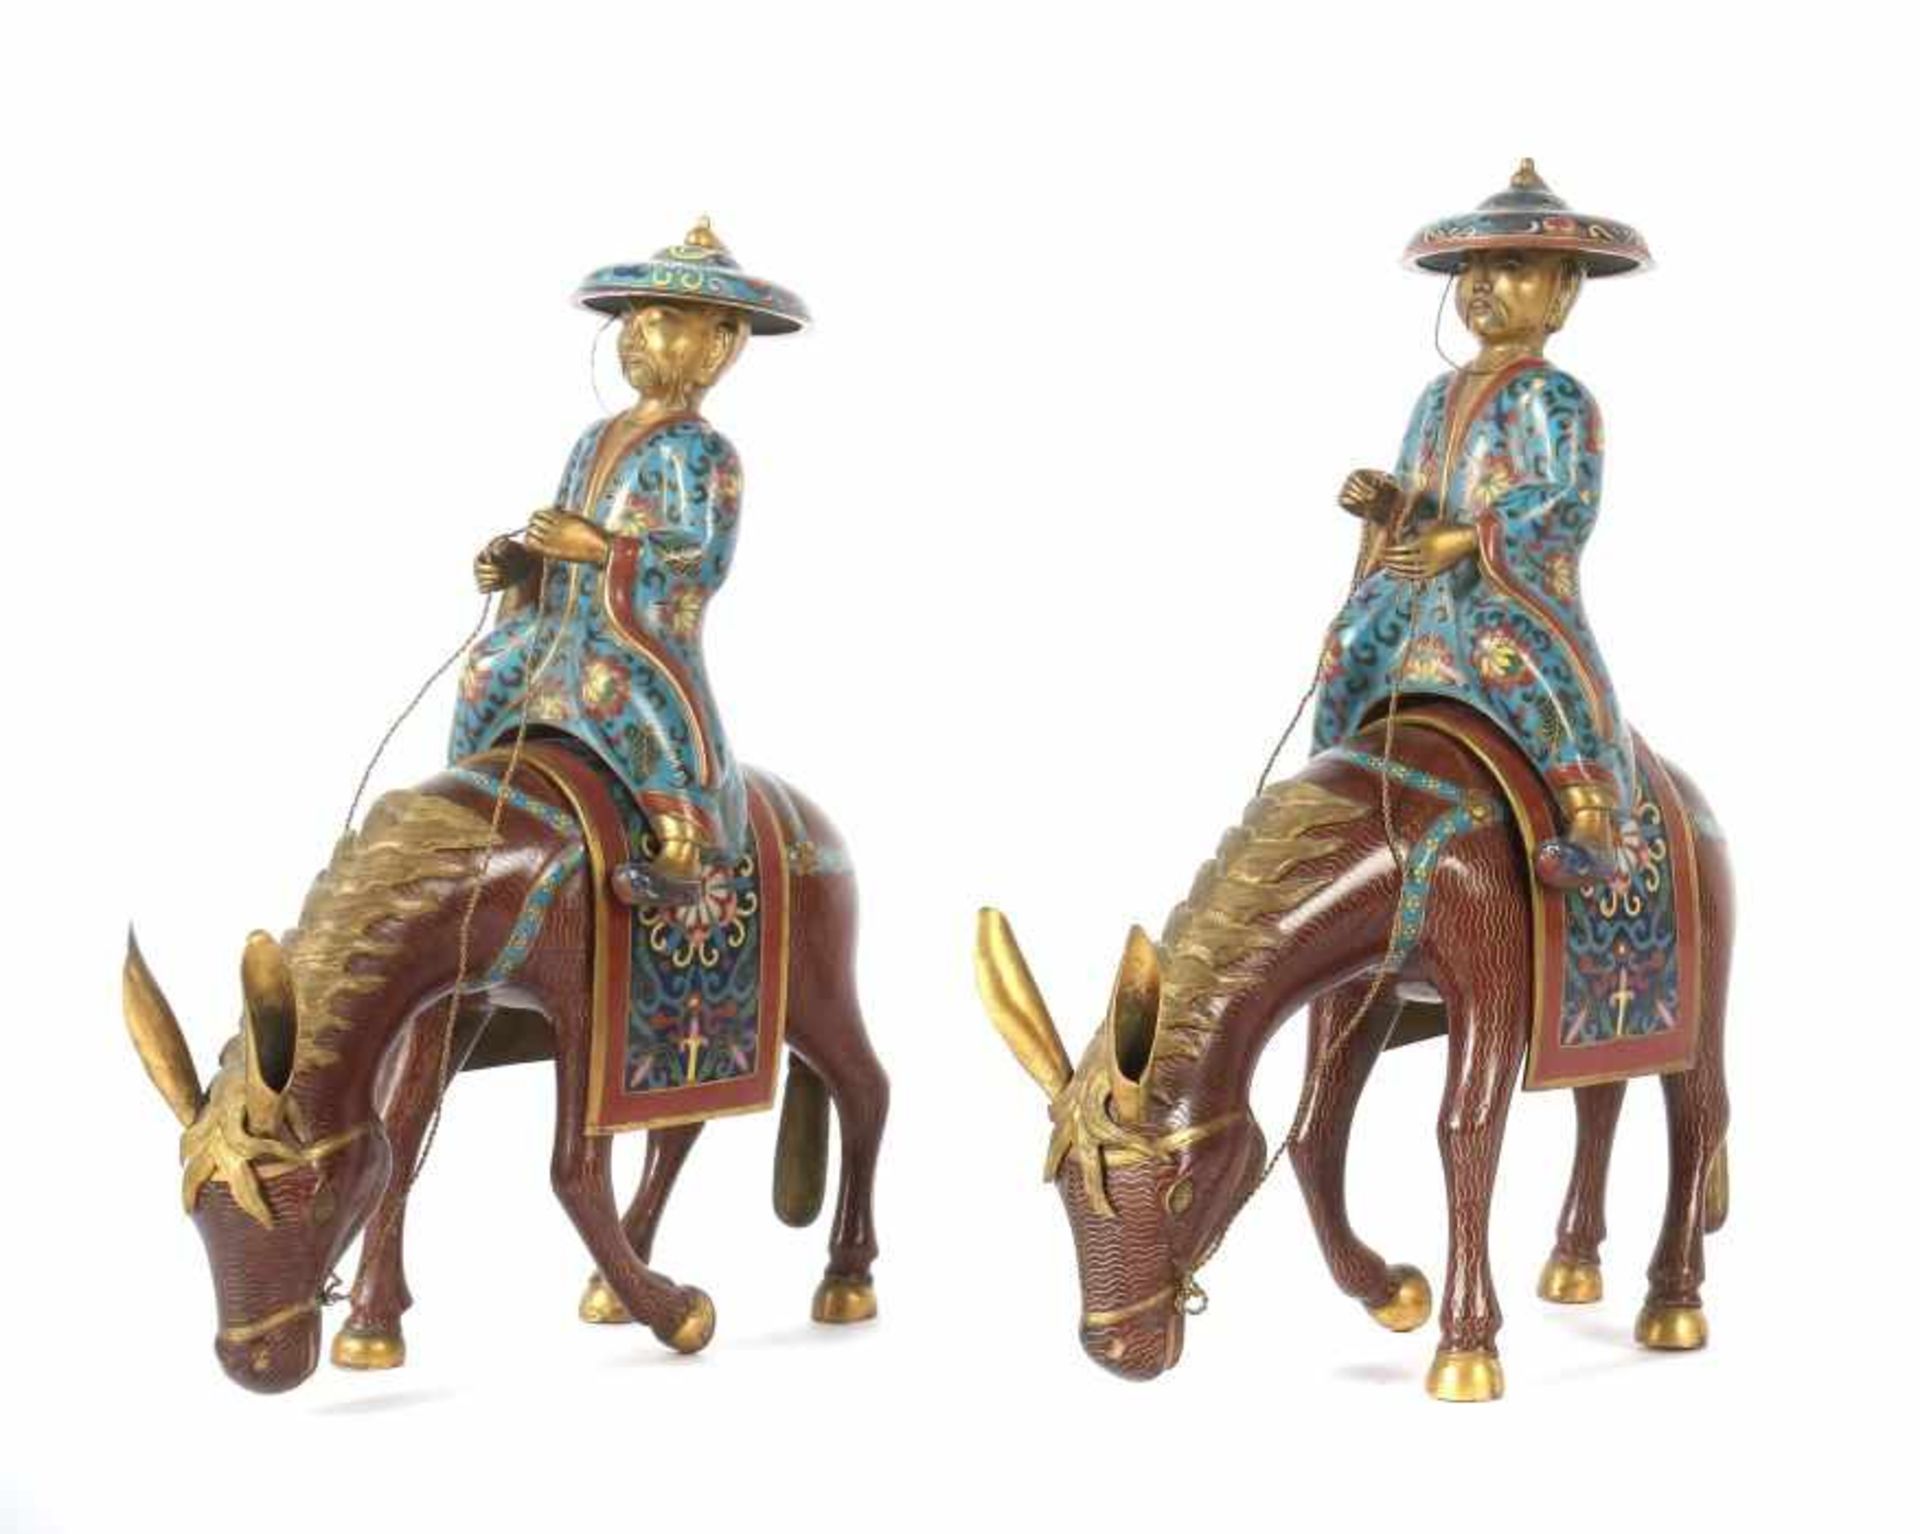 2 Reiter auf MaultierenChina, wohl um 1900, Messing/Cloisonné, mehrteilige Figuren mit plastisch